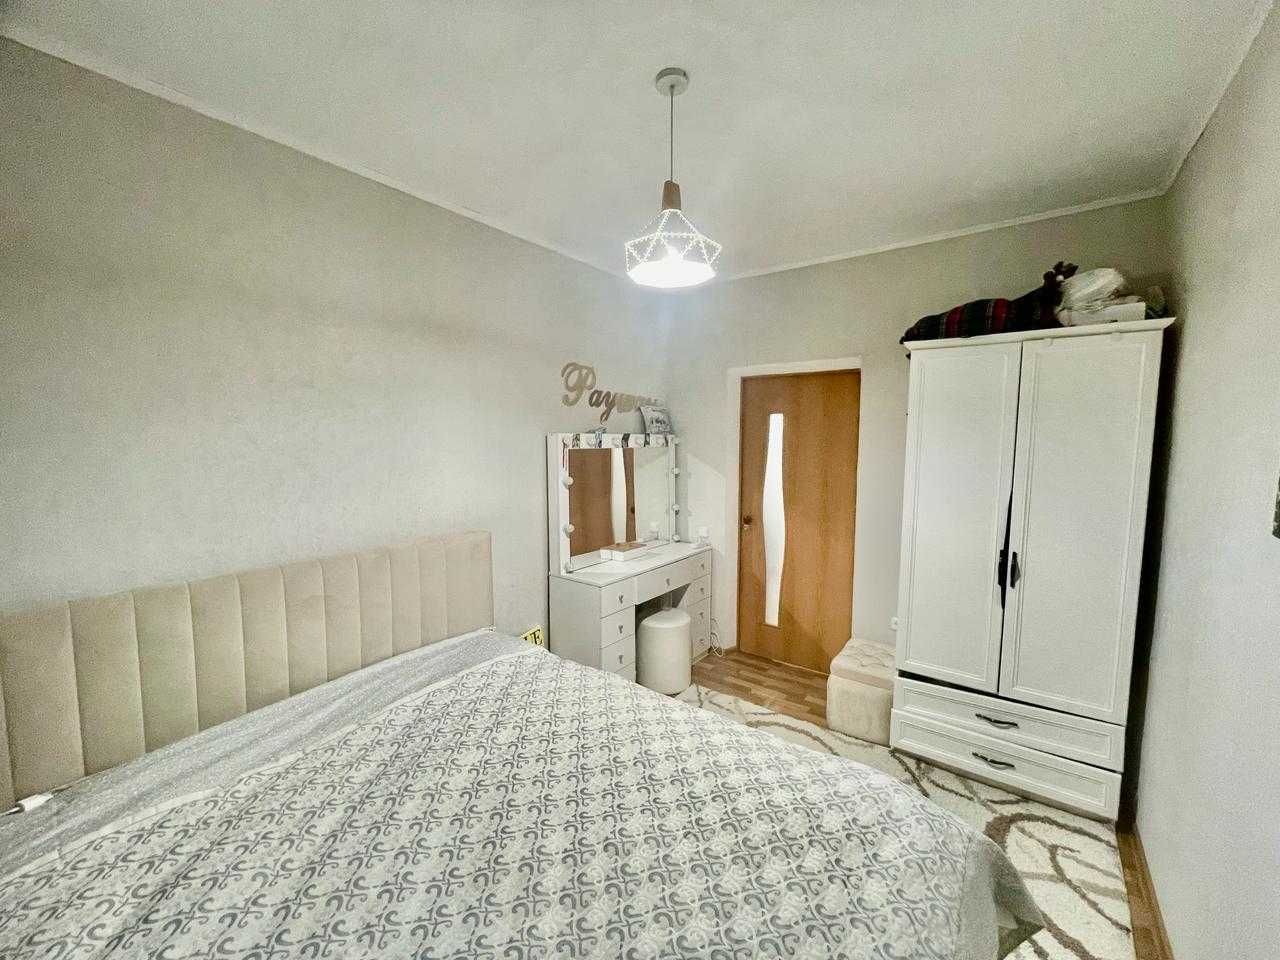 Продаётся частный дом в районе с/т "Локомотив" вблизи Шолохова